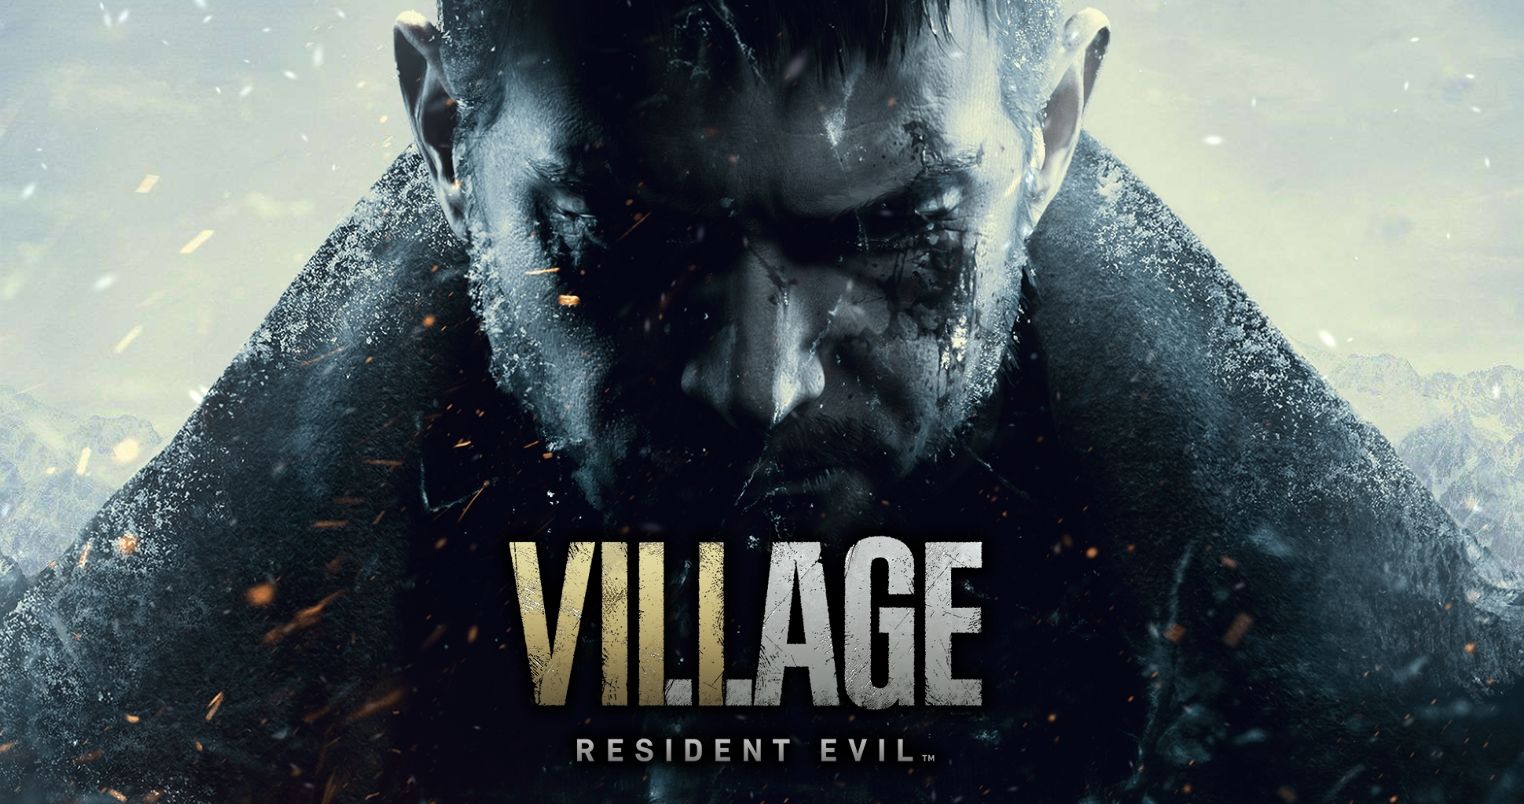 В русской озвучке Resident Evil Village будет нецензурная лексика